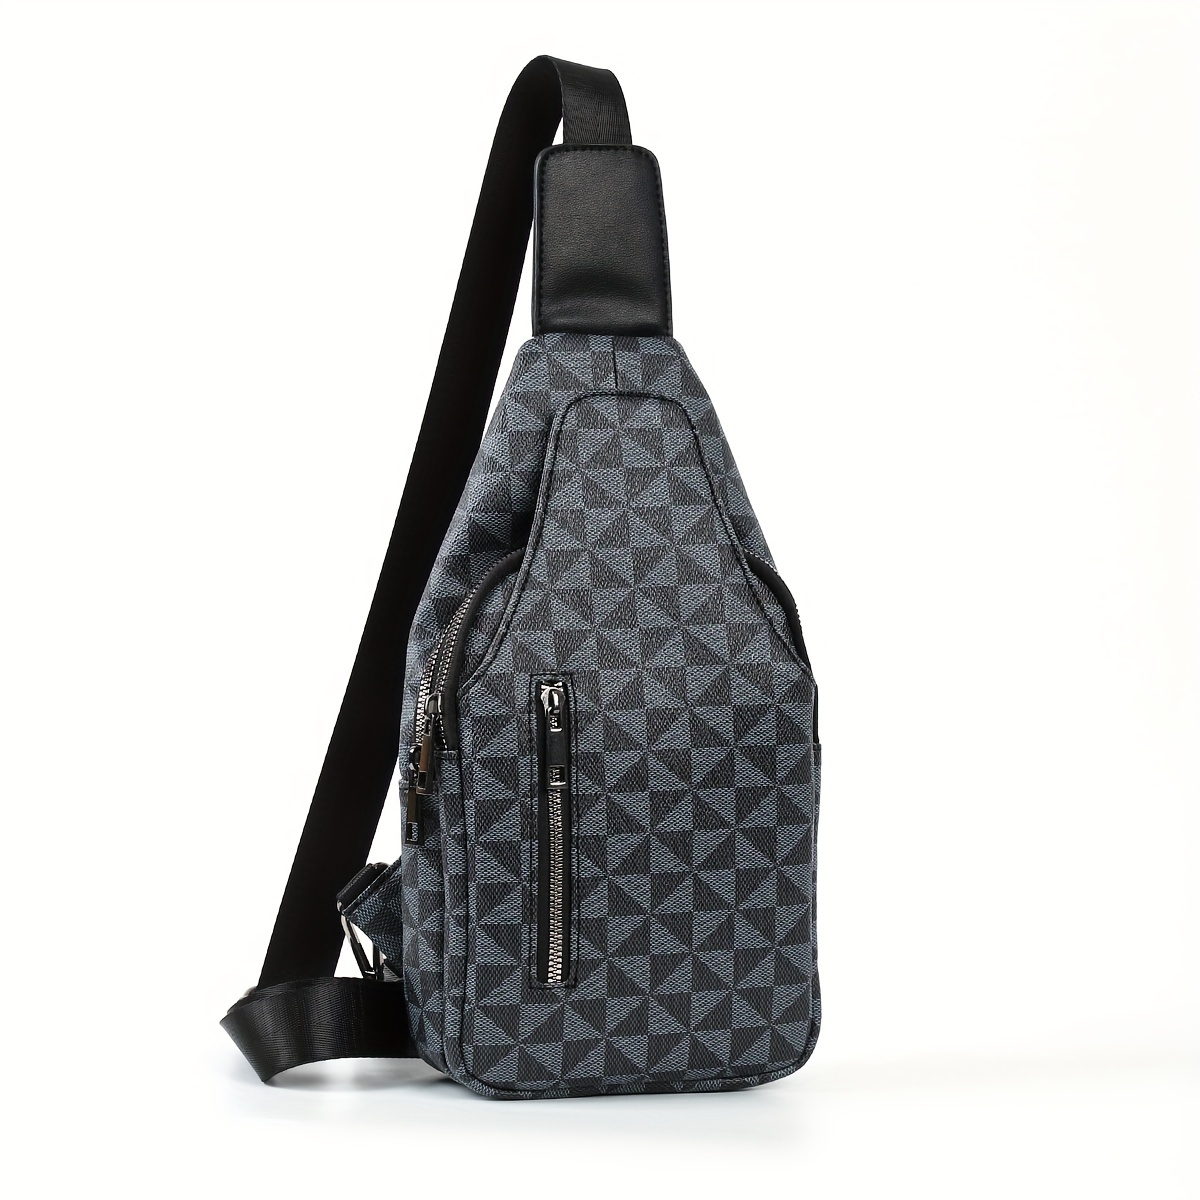 Men's backpack, travel bag, fashionable plaid black backpack